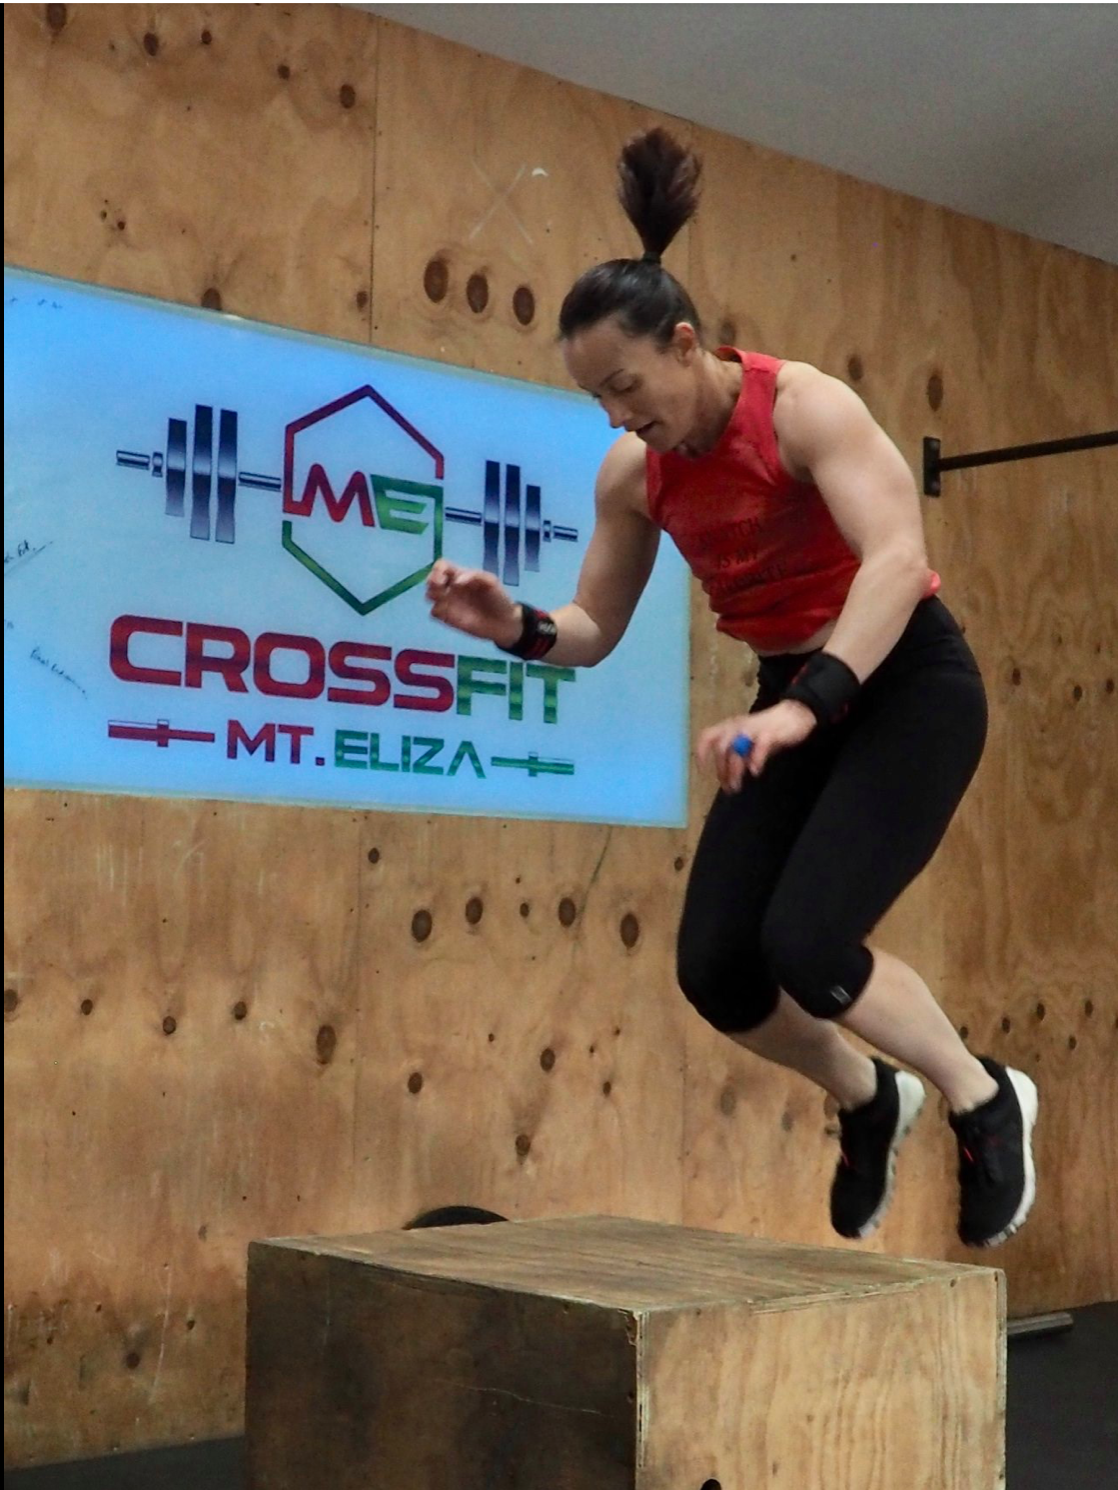 CrossFit Mt Eliza box jumps